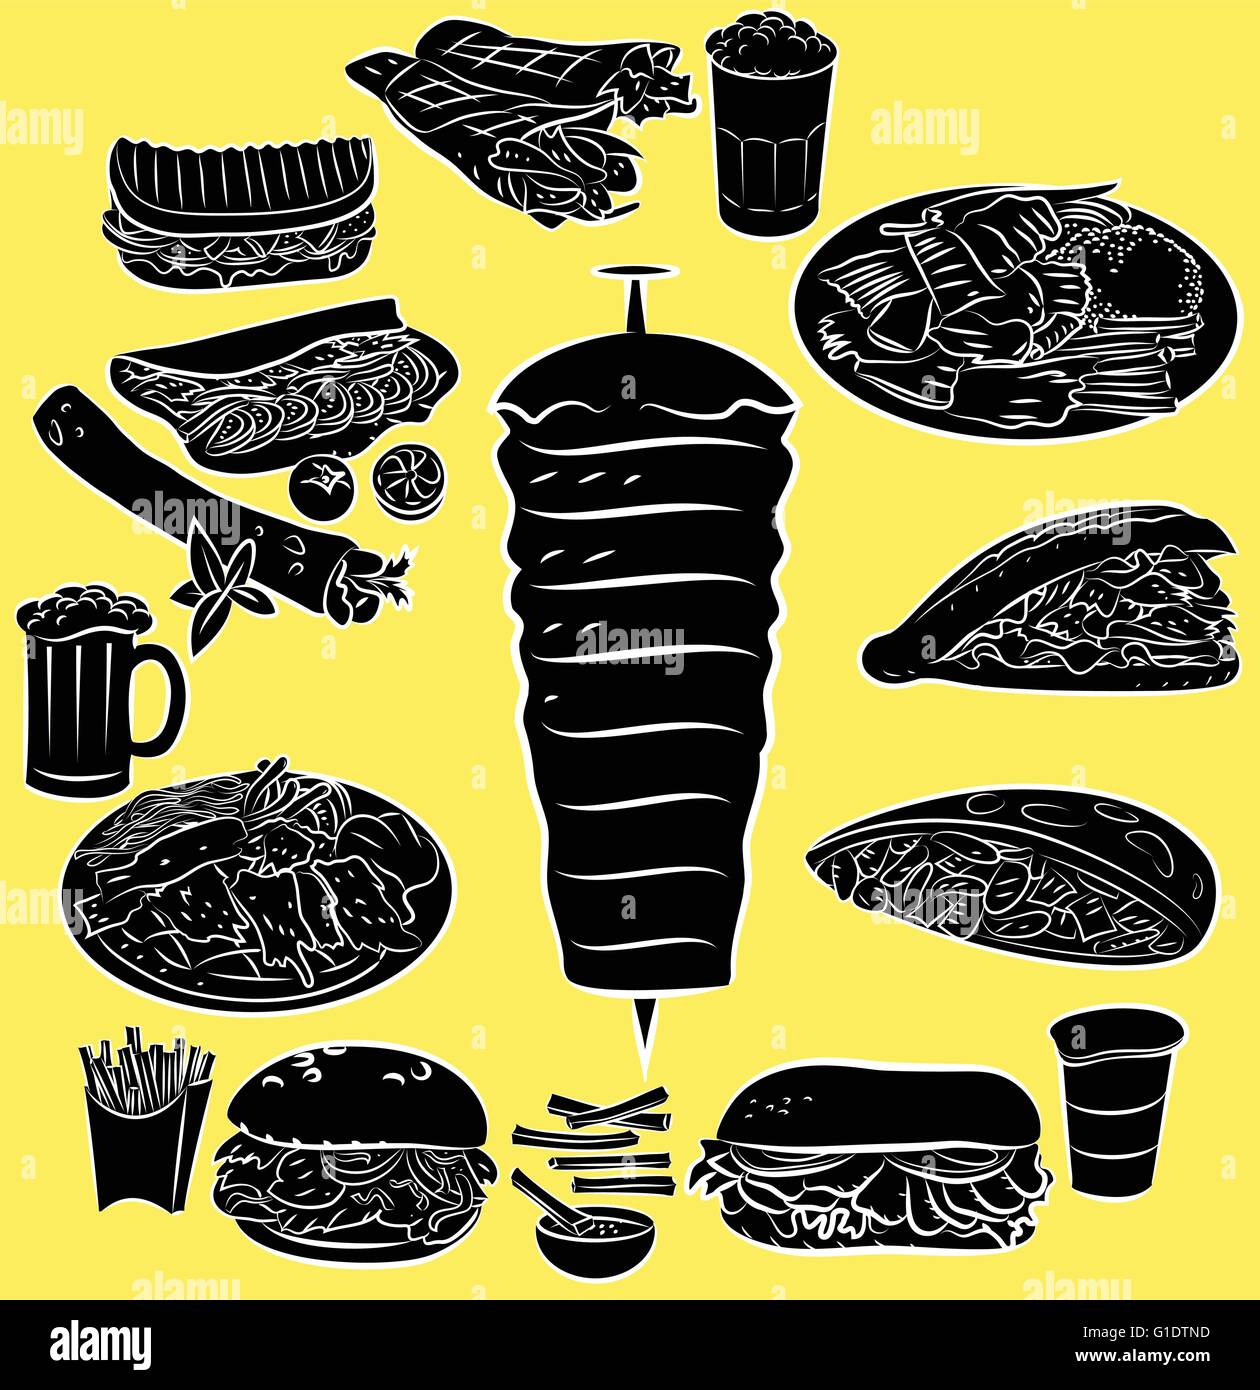 Vektor-Illustration von Döner Kebab Sammlung im Silhouette-Modus auf gelbem Hintergrund Stock Vektor